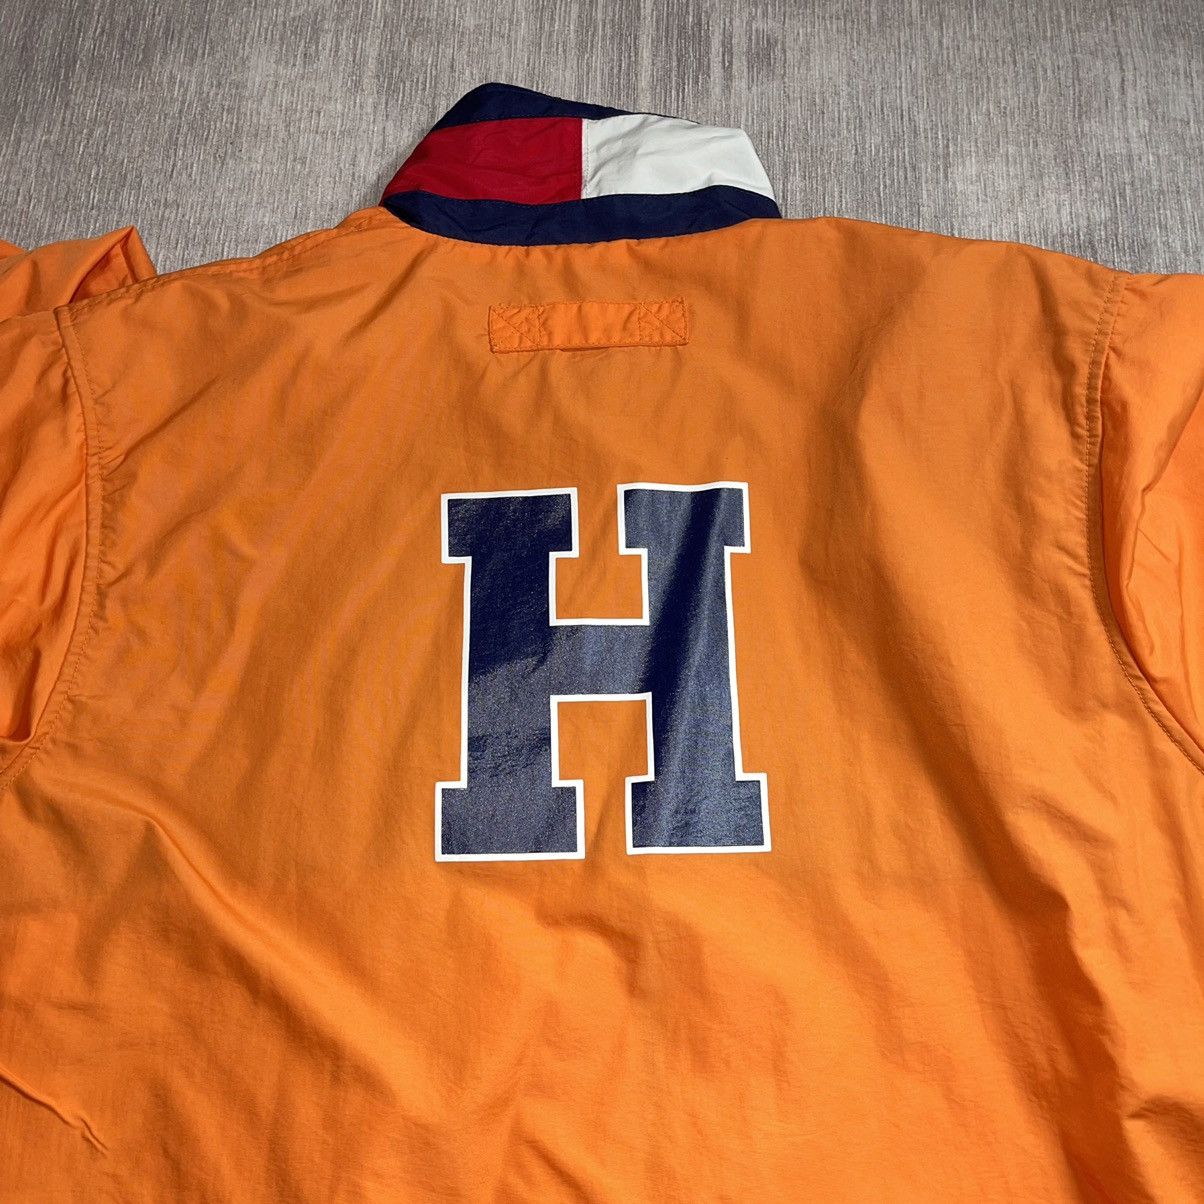 Tommy Hilfiger Vtg 90’s Tommy Hilfiger Jacket M Orange Flag Collar Size US M / EU 48-50 / 2 - 7 Preview